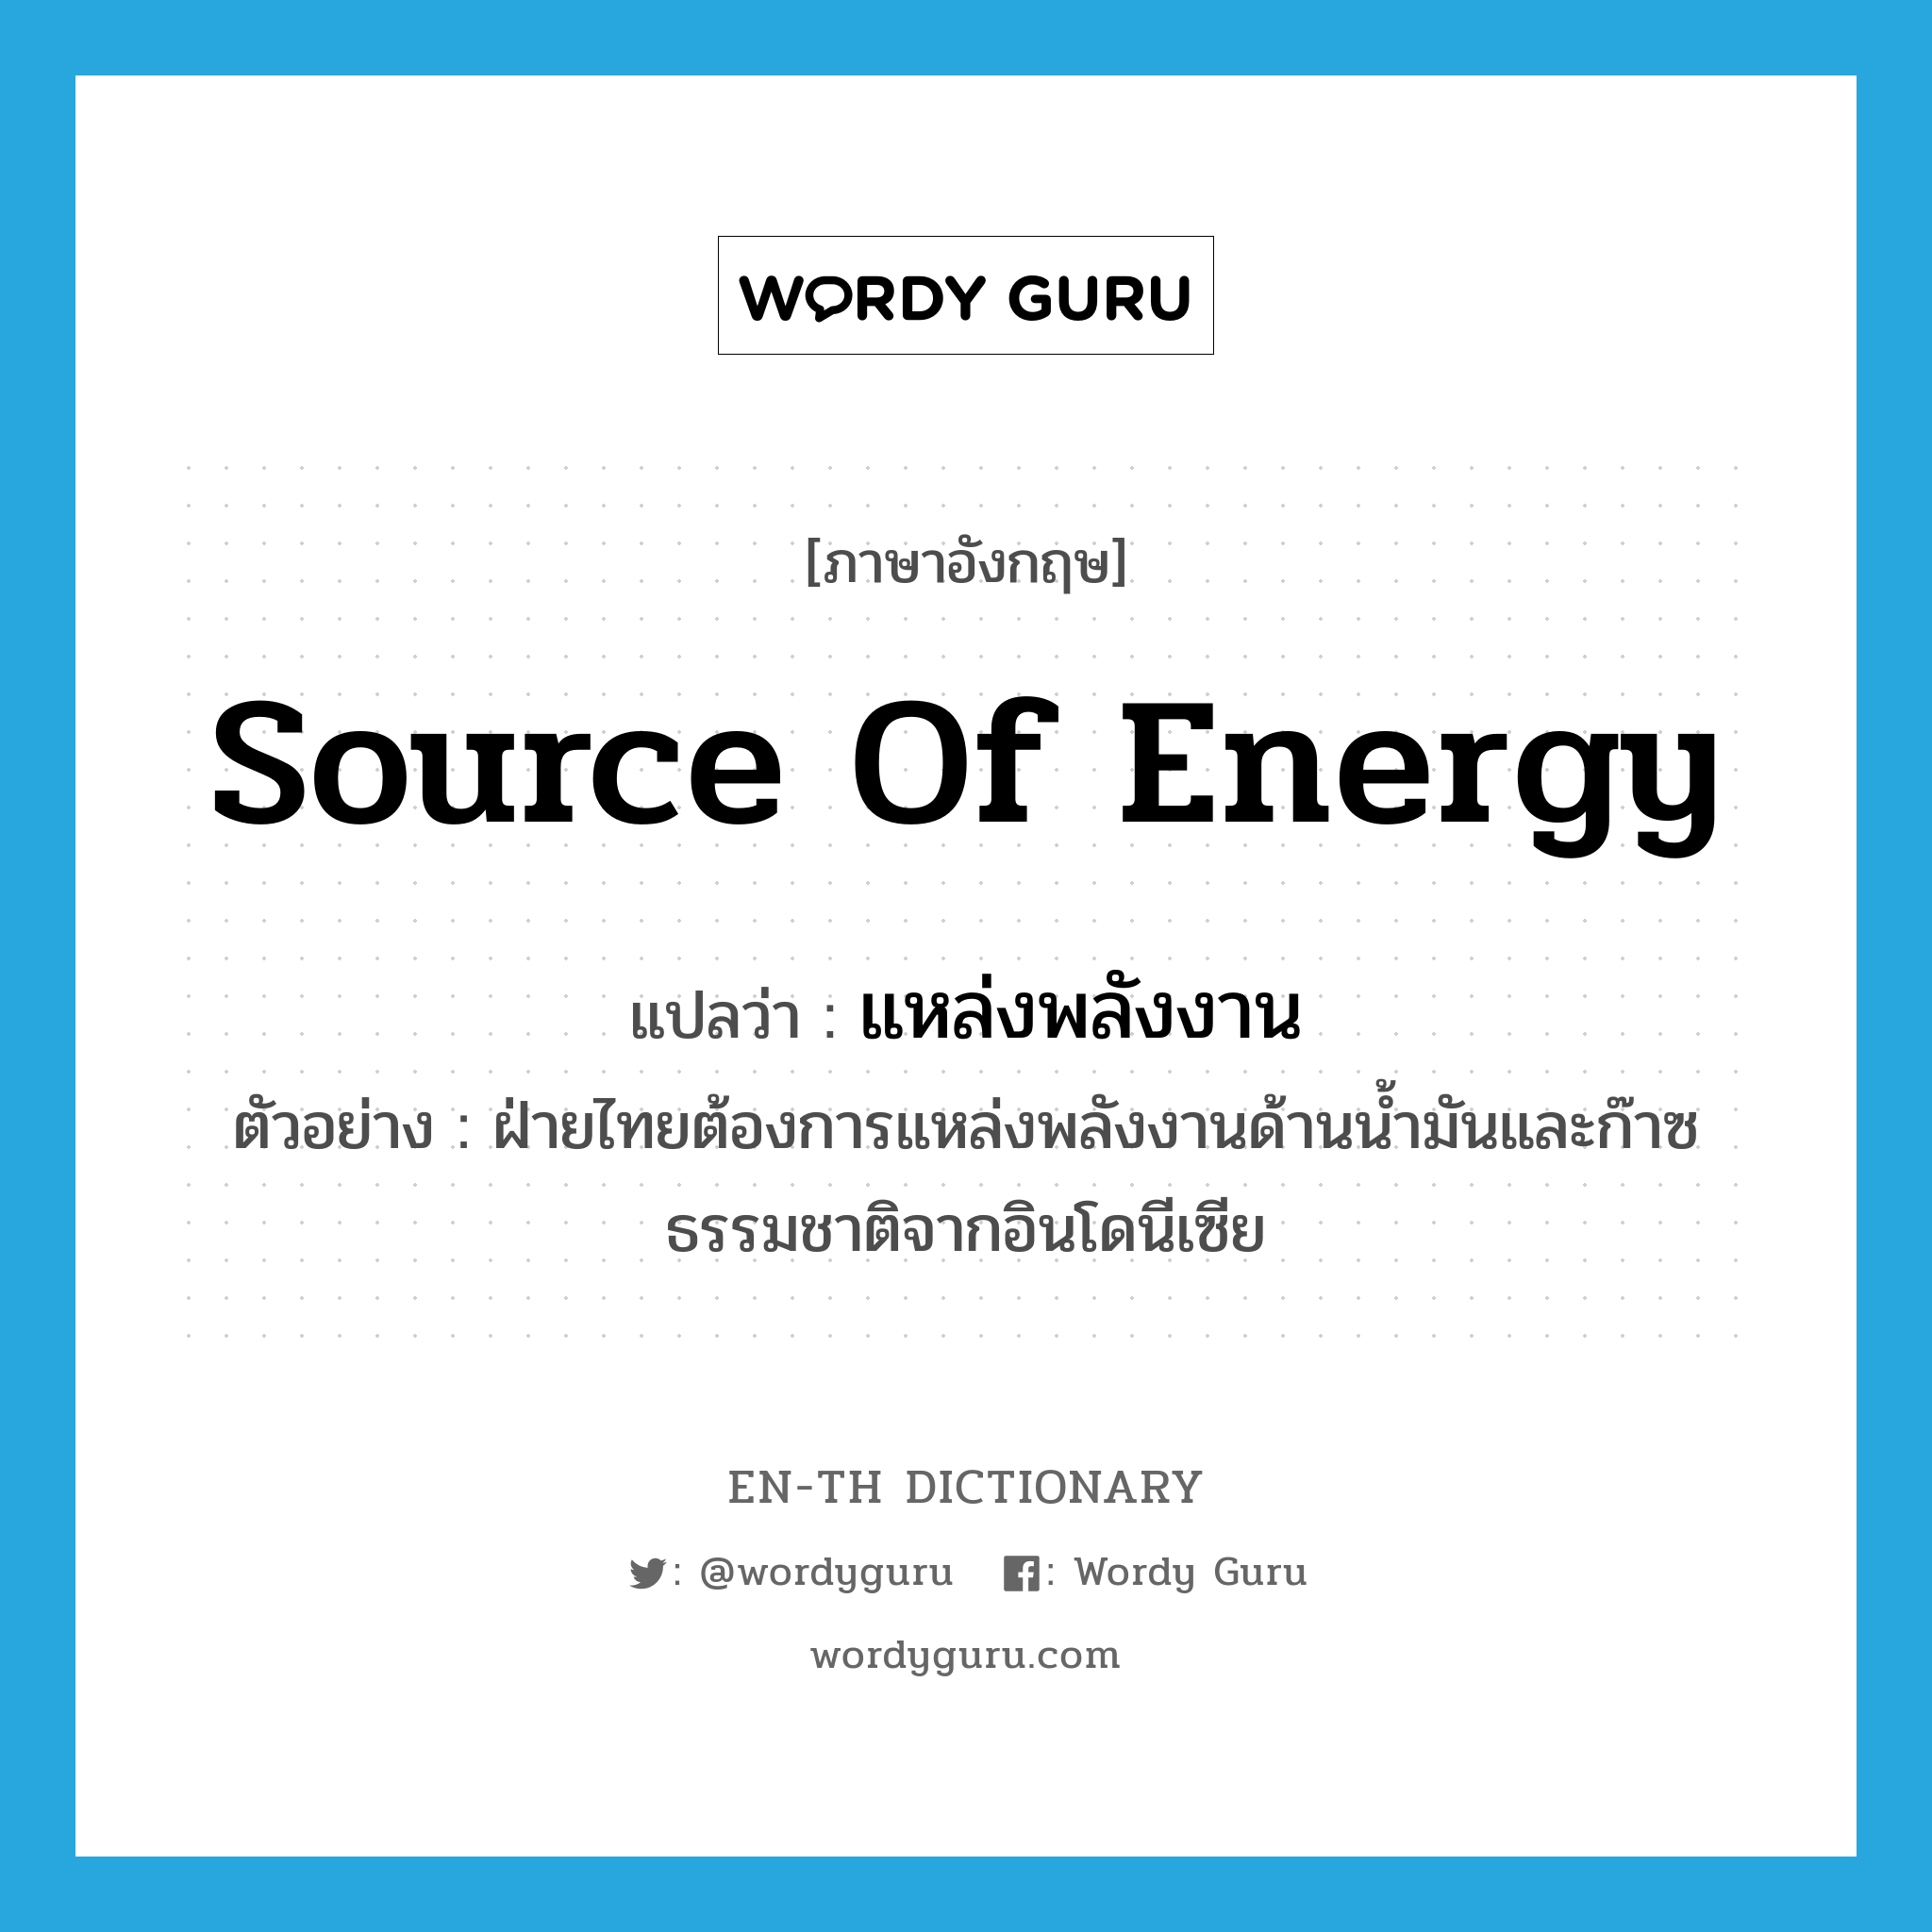 source of energy แปลว่า?, คำศัพท์ภาษาอังกฤษ source of energy แปลว่า แหล่งพลังงาน ประเภท N ตัวอย่าง ฝ่ายไทยต้องการแหล่งพลังงานด้านน้ำมันและก๊าซธรรมชาติจากอินโดนีเซีย หมวด N